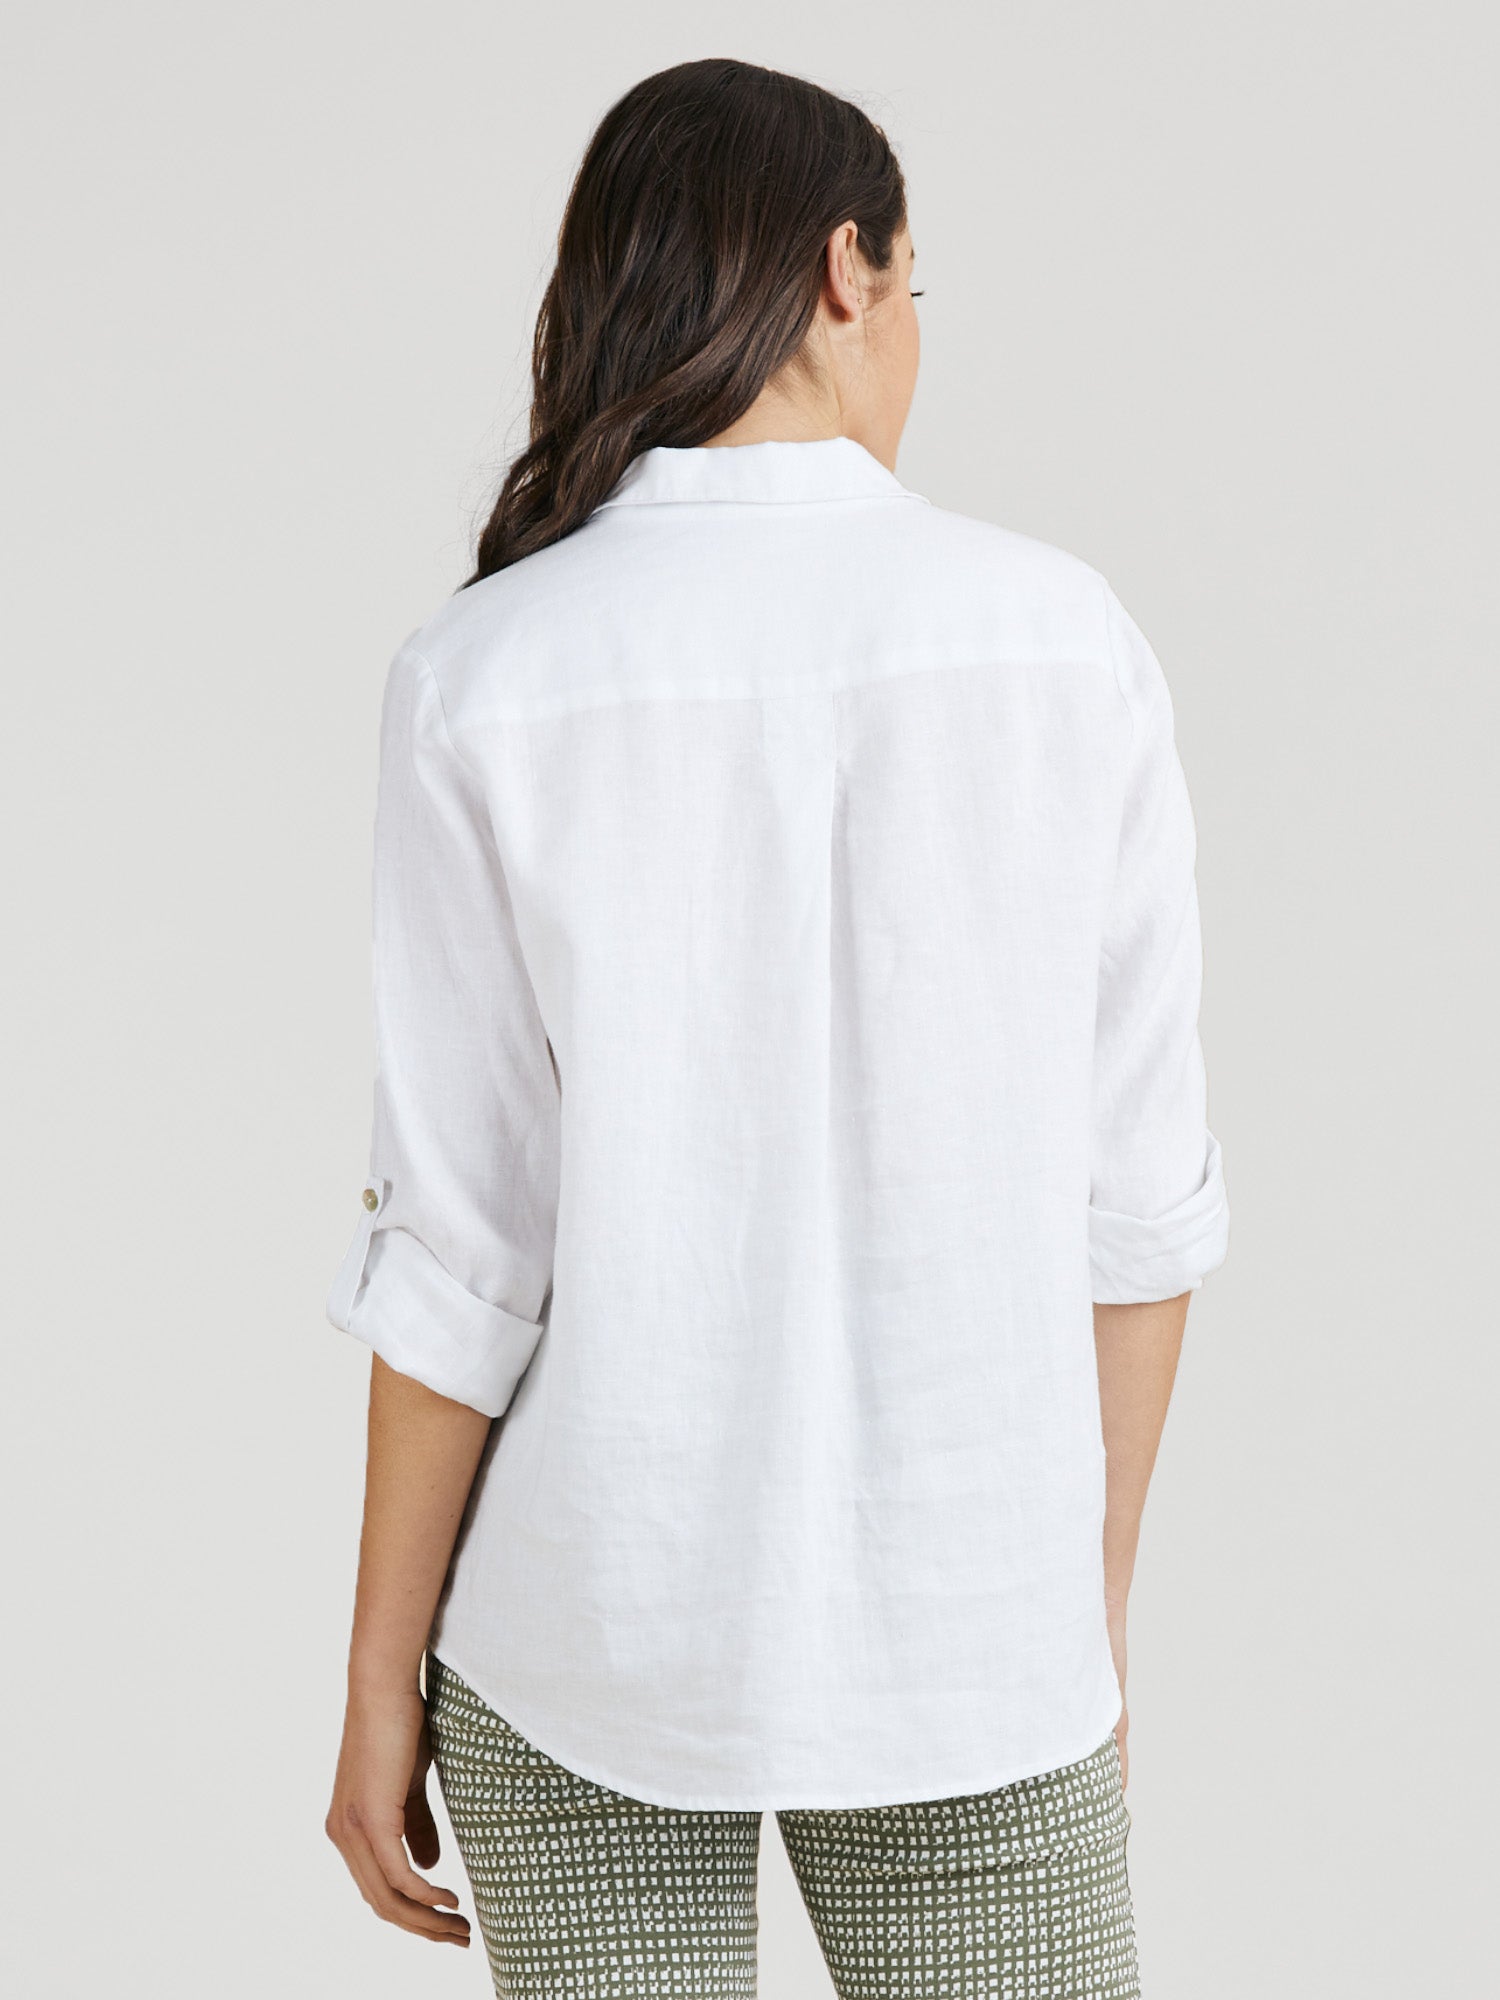 Classic White Linen Shirt - White